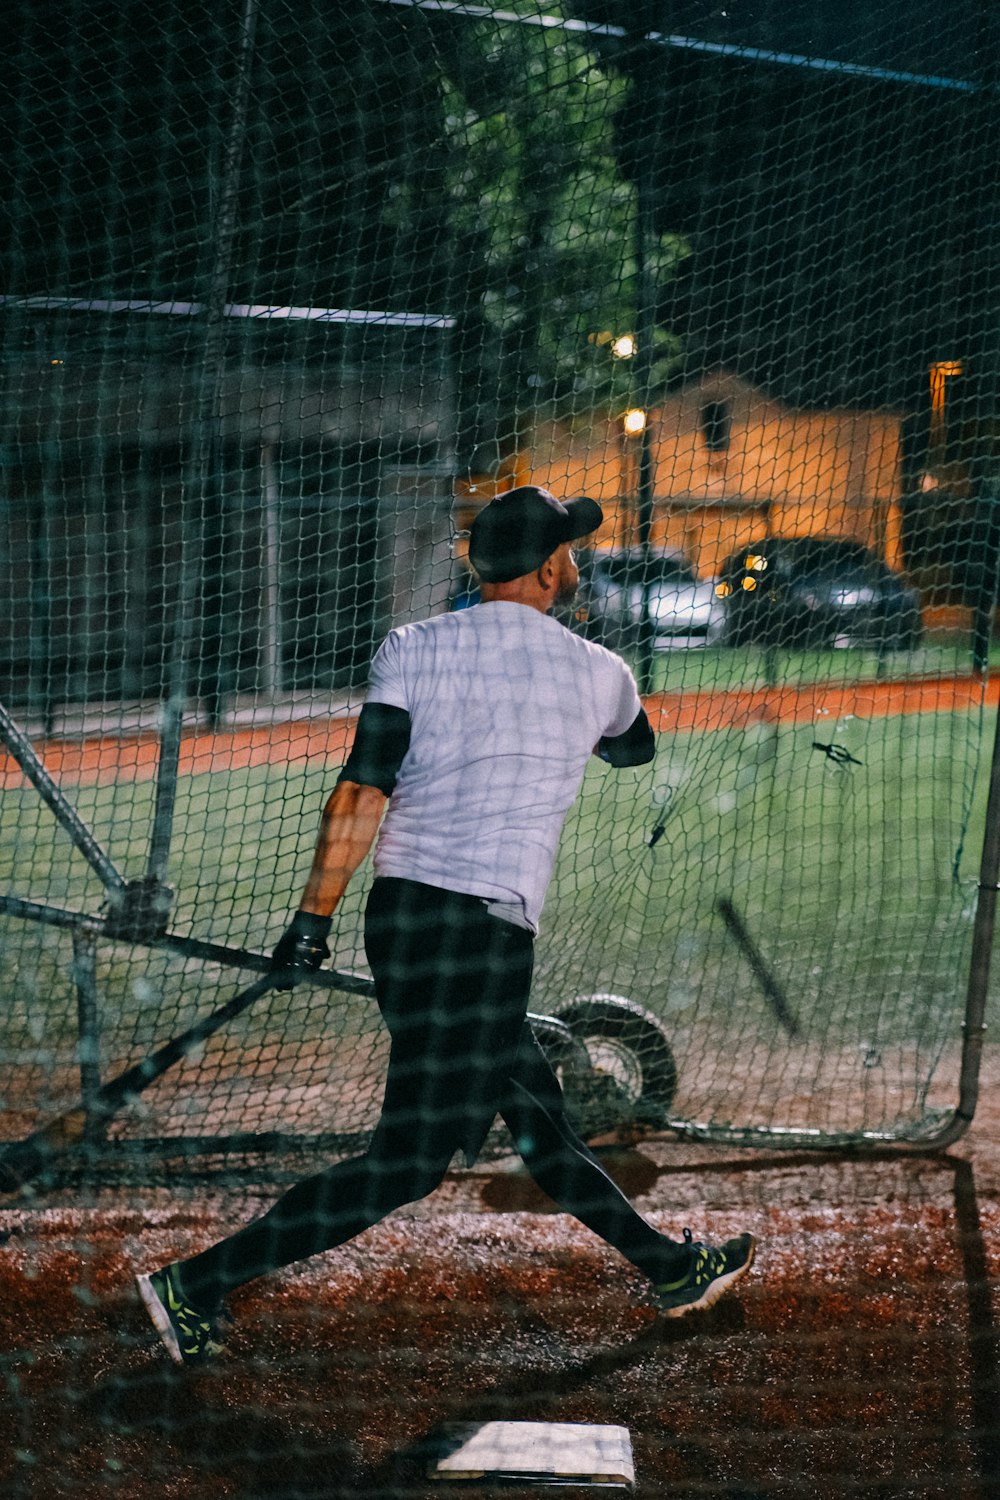 a man swinging a baseball bat at a ball